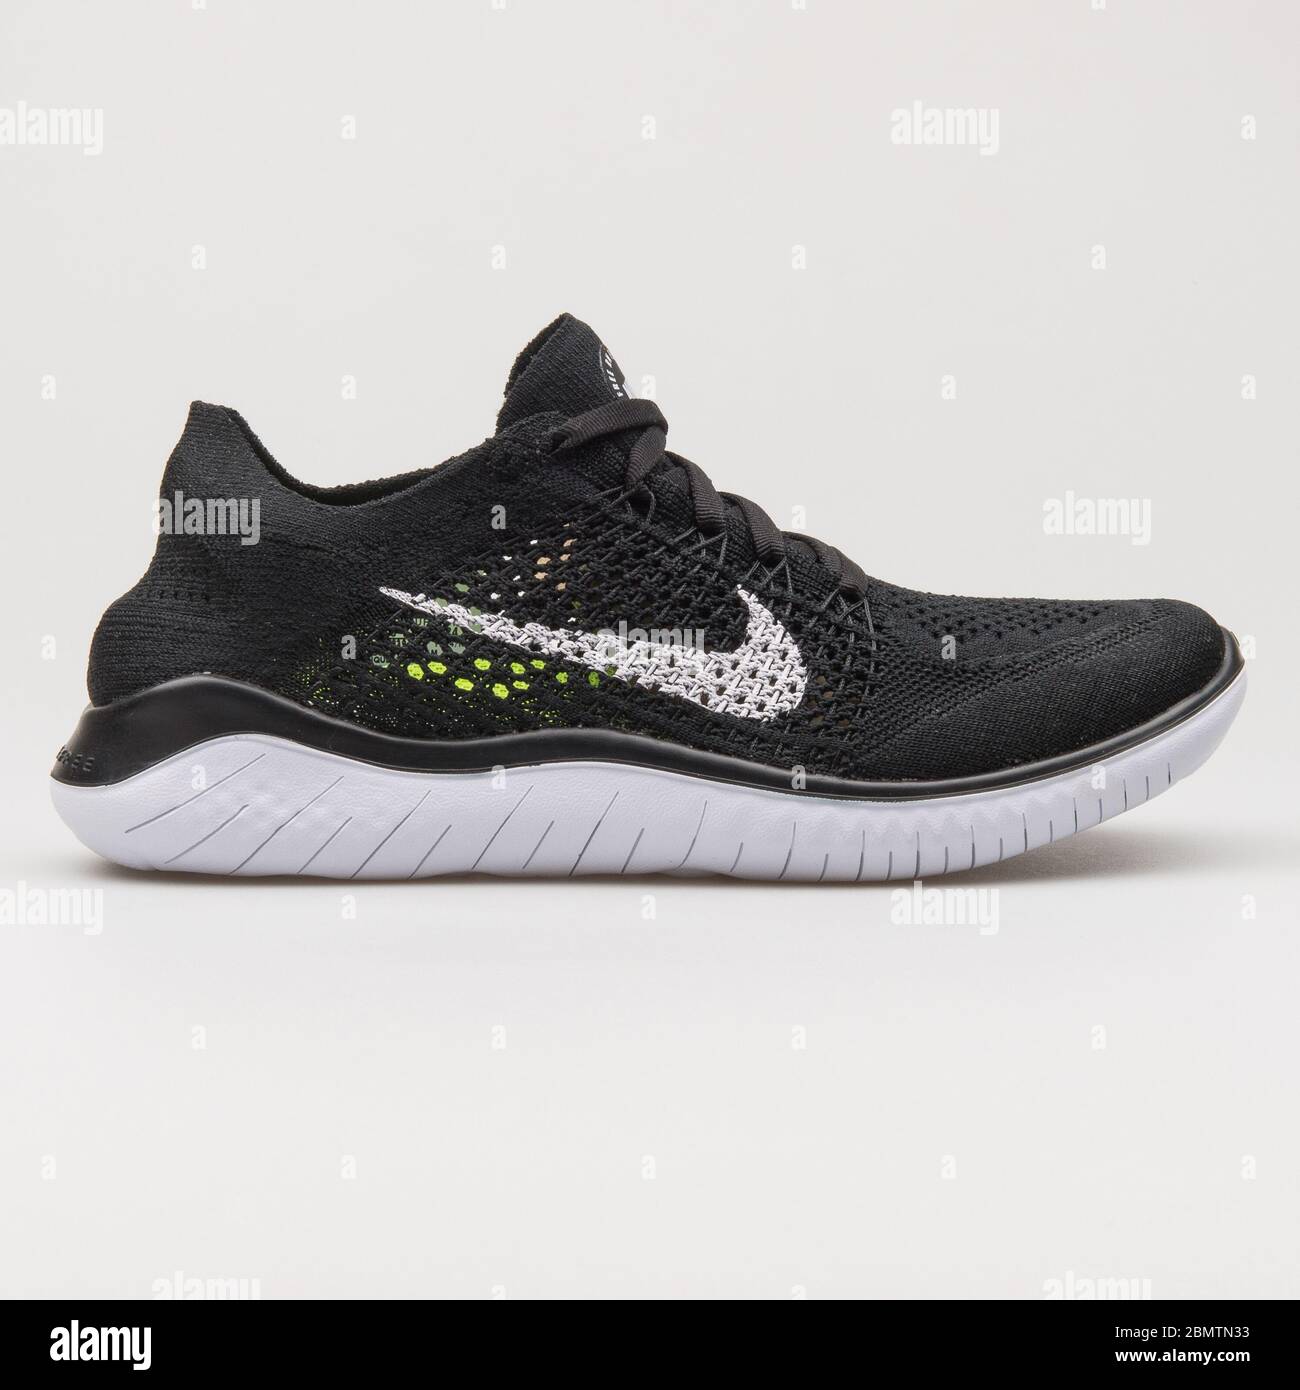 WIEN, ÖSTERREICH - 19. FEBRUAR 2018: Nike Free RN Flyknit 2018 Schwarz-Weiß  Sneaker auf weißem Hintergrund Stockfotografie - Alamy